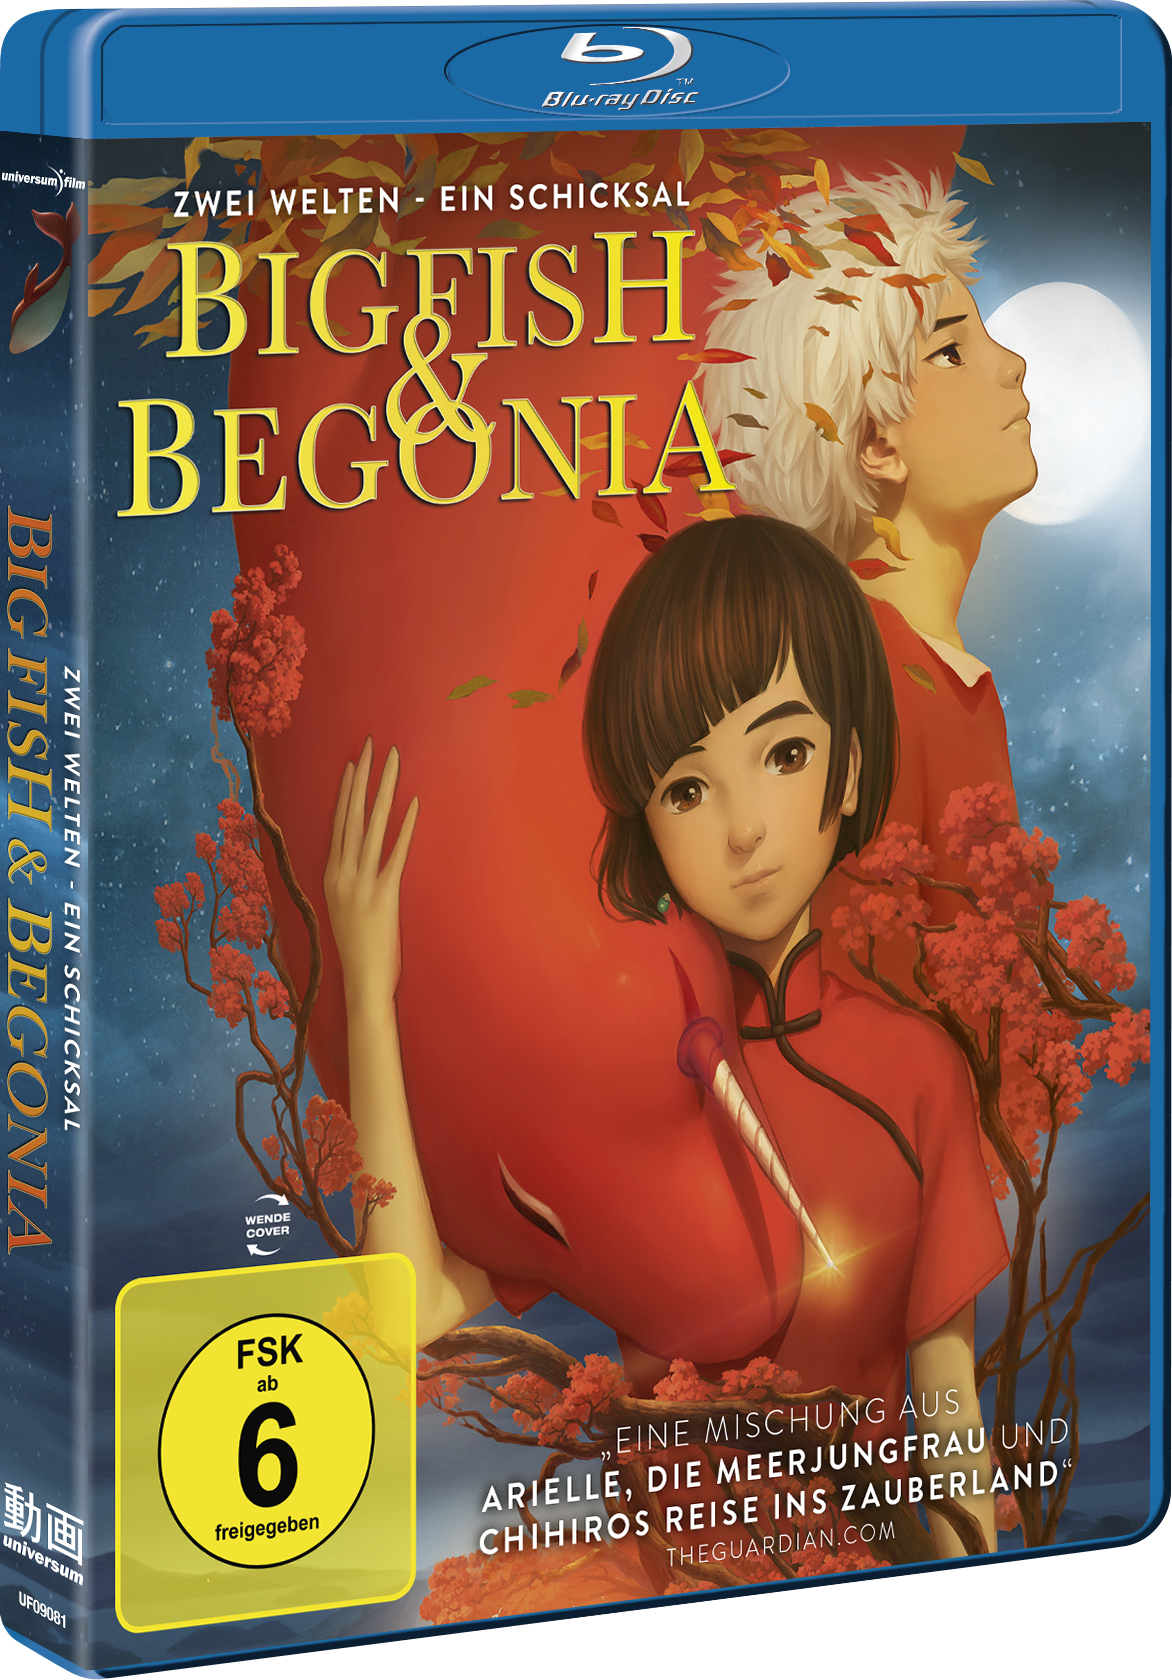 Big Fish - Welten Ein Zwei Begonia Schicksal - Blu-ray 